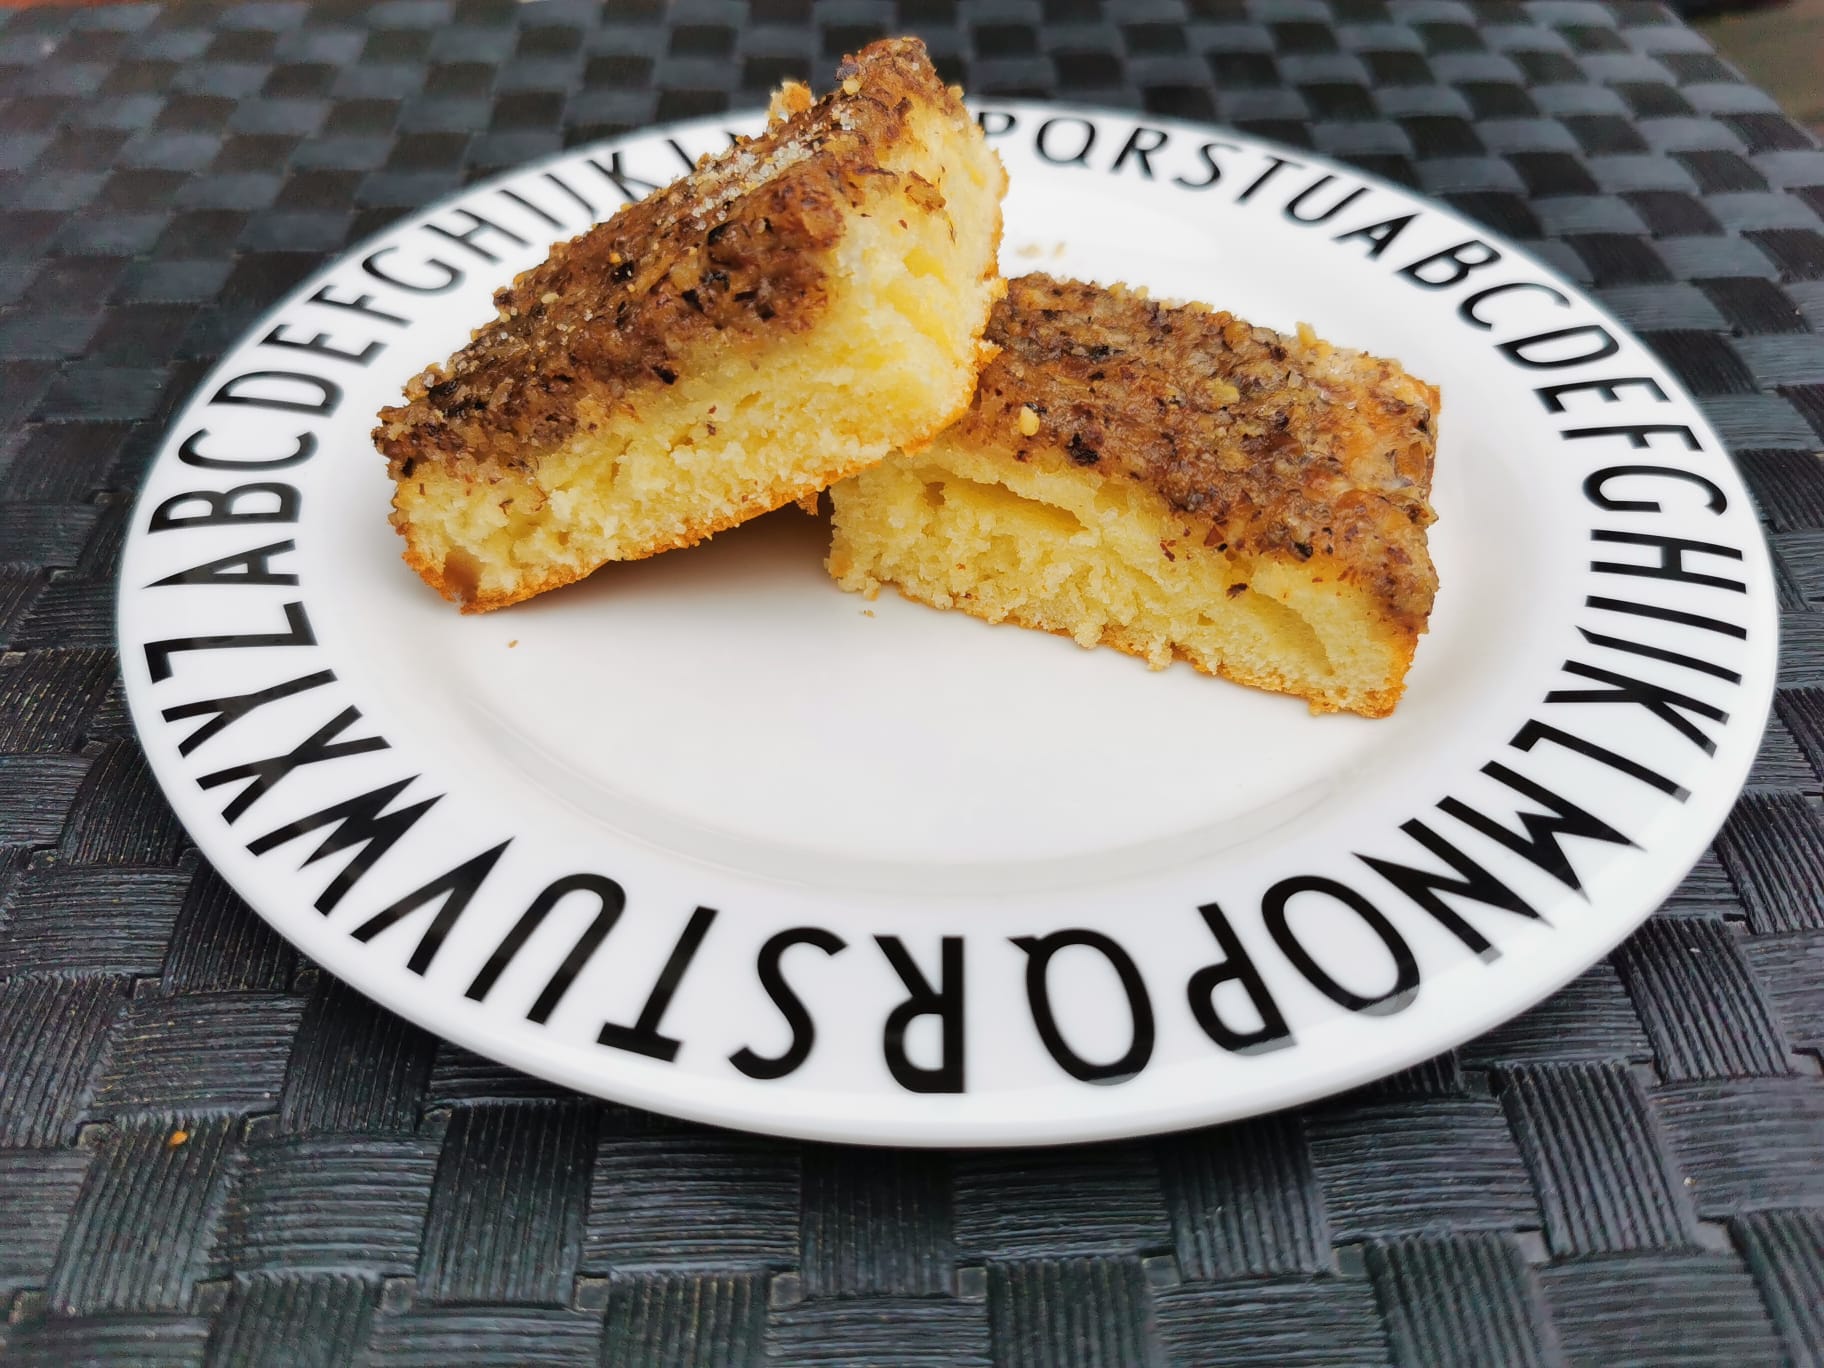 Buttermilchkuchen mit Nuss - Bidilis-Welt